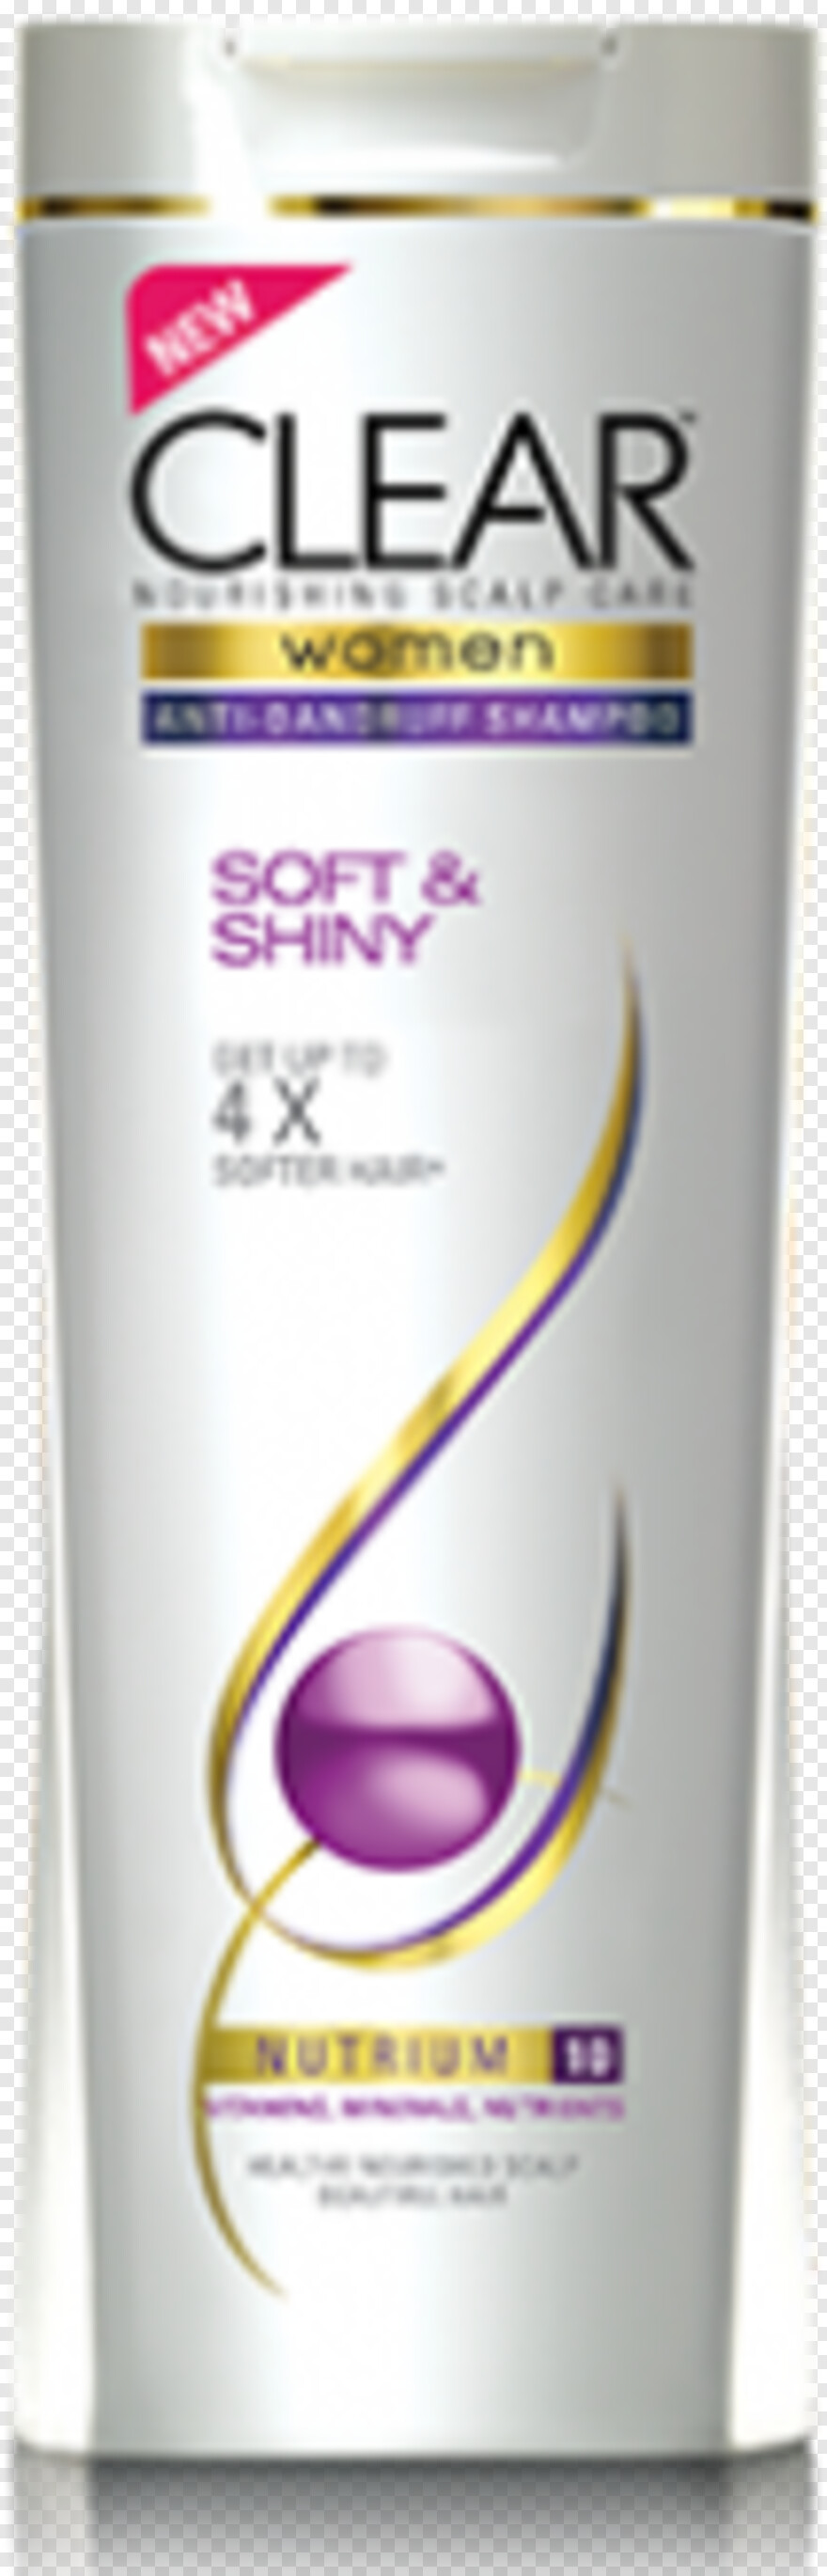 shampoo # 523547